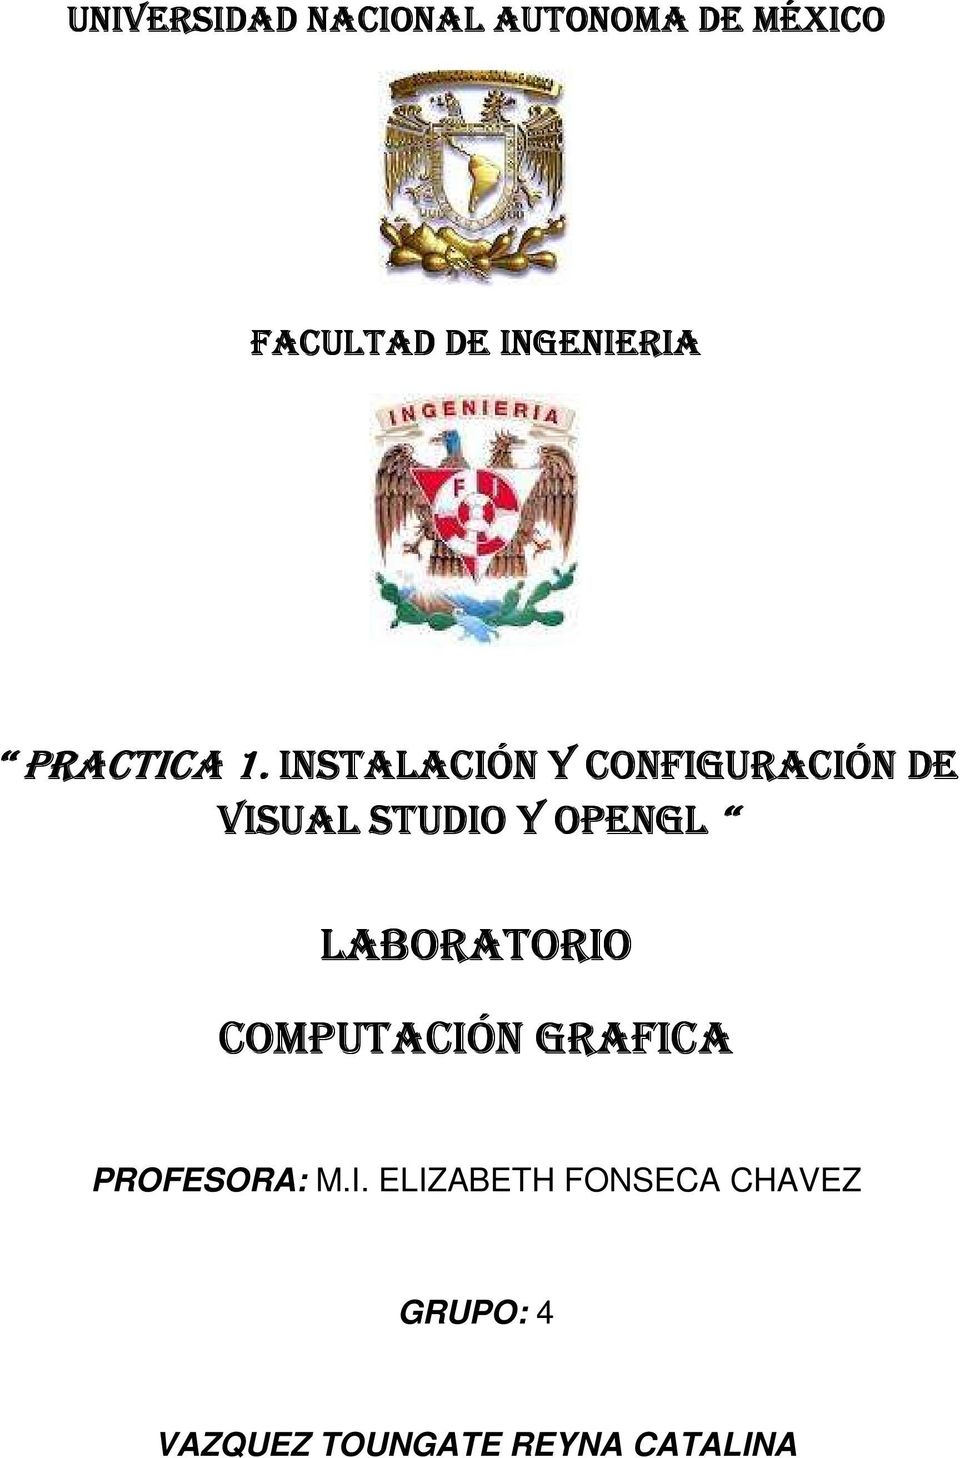 INSTALACIÓN Y CONFIGURACIÓN DE VISUAL STUDIO Y OPENGL